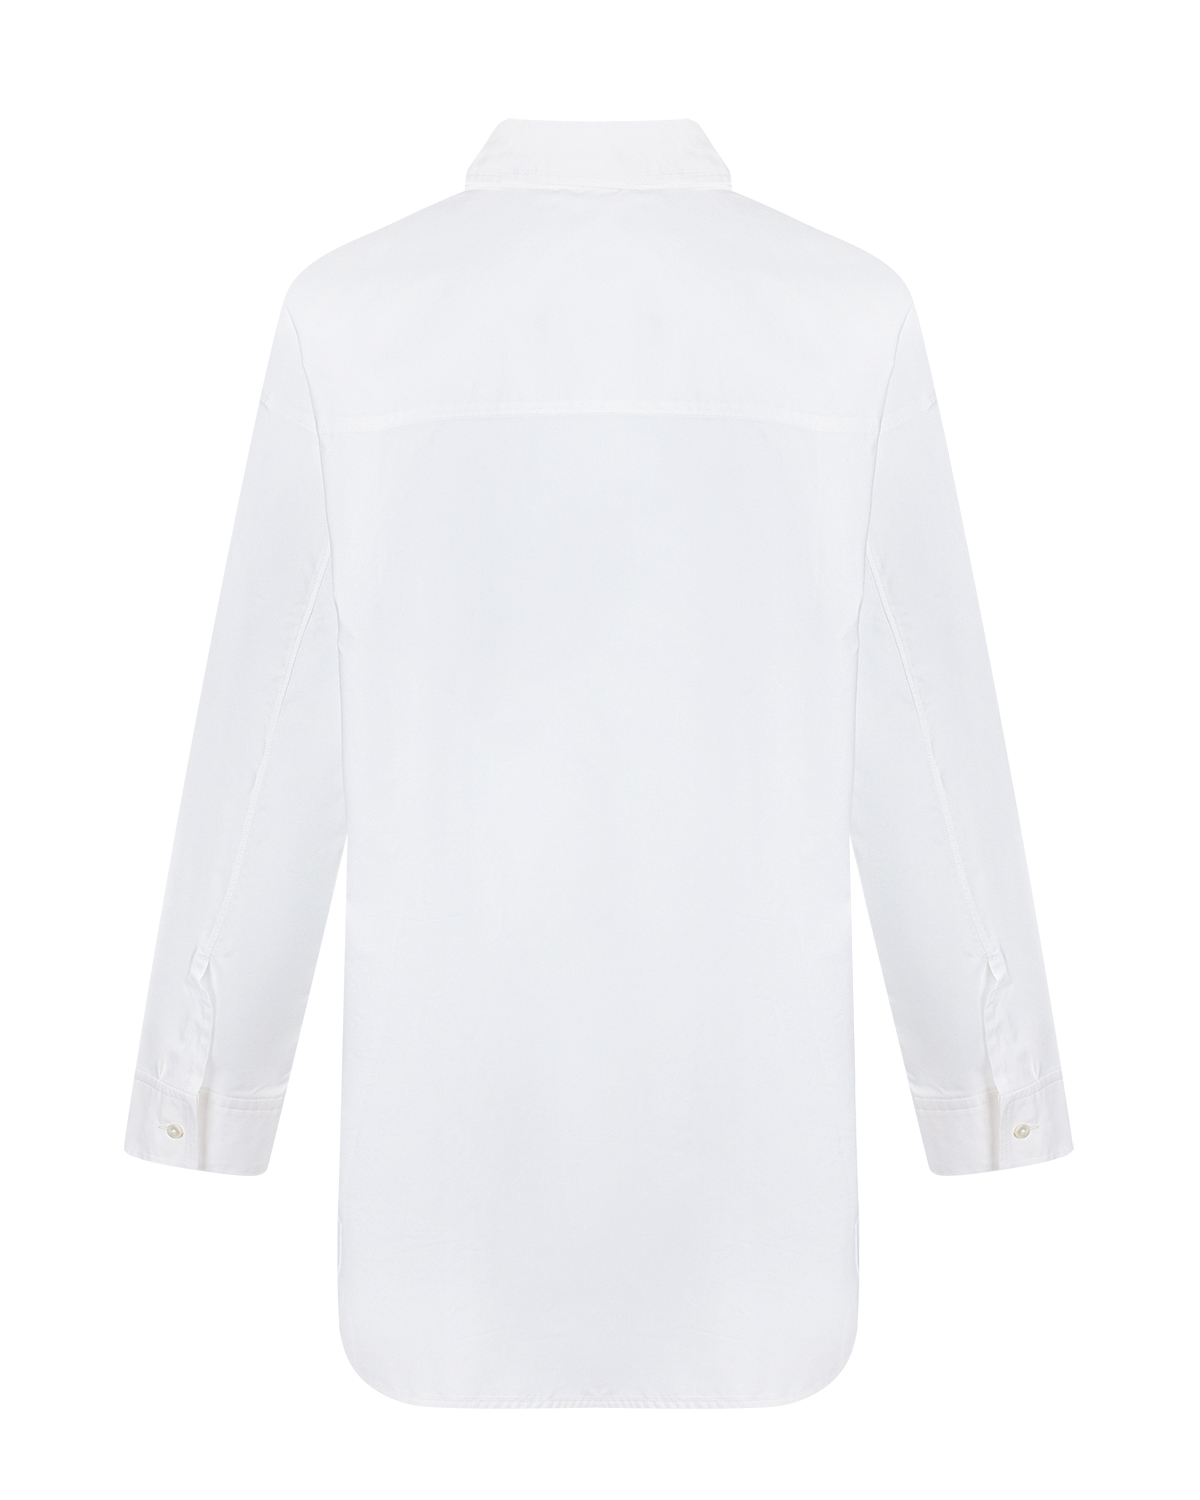 Удлиненная белая рубашка Parosh, размер 38, цвет белый - фото 5